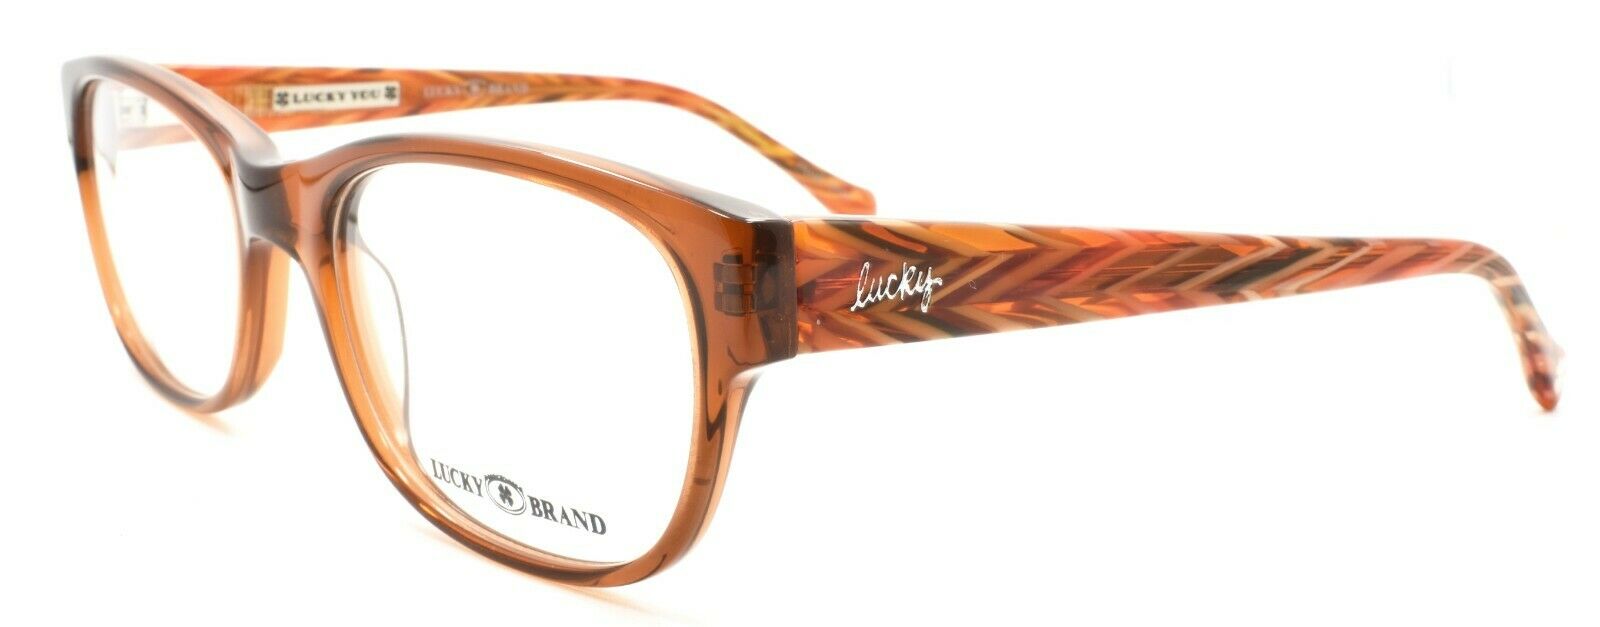 1-LUCKY BRAND PCH Women's Eyeglasses Frames 52-18-140 Brown + CASE-751286237313-IKSpecs